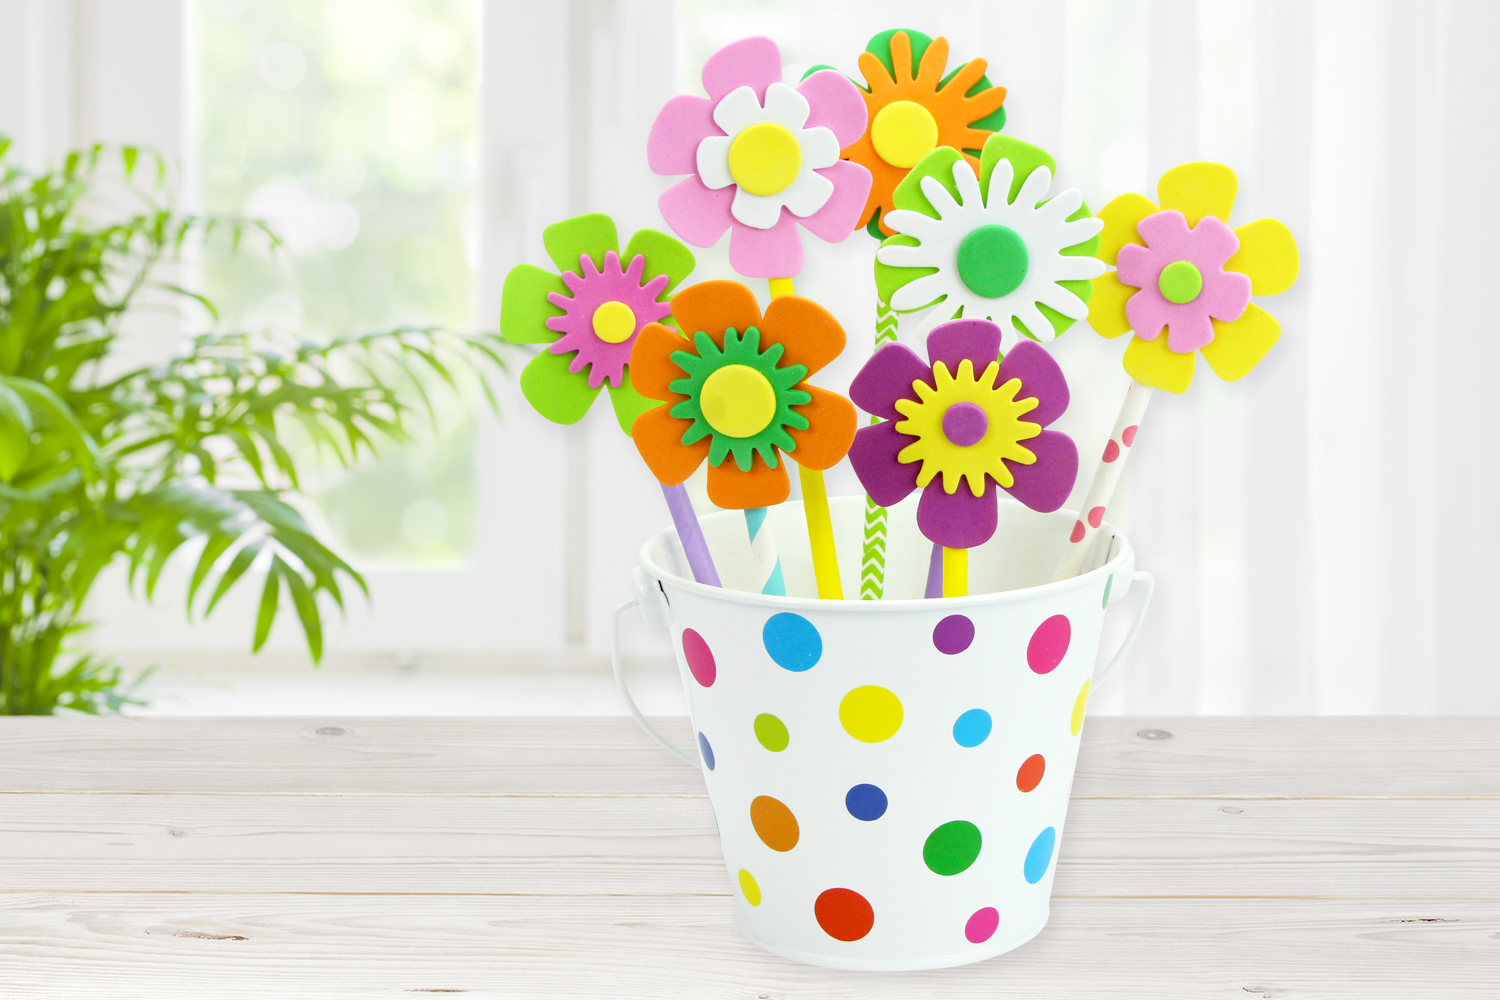 Autocollants fleurs en couleurs pour chambre d'enfant